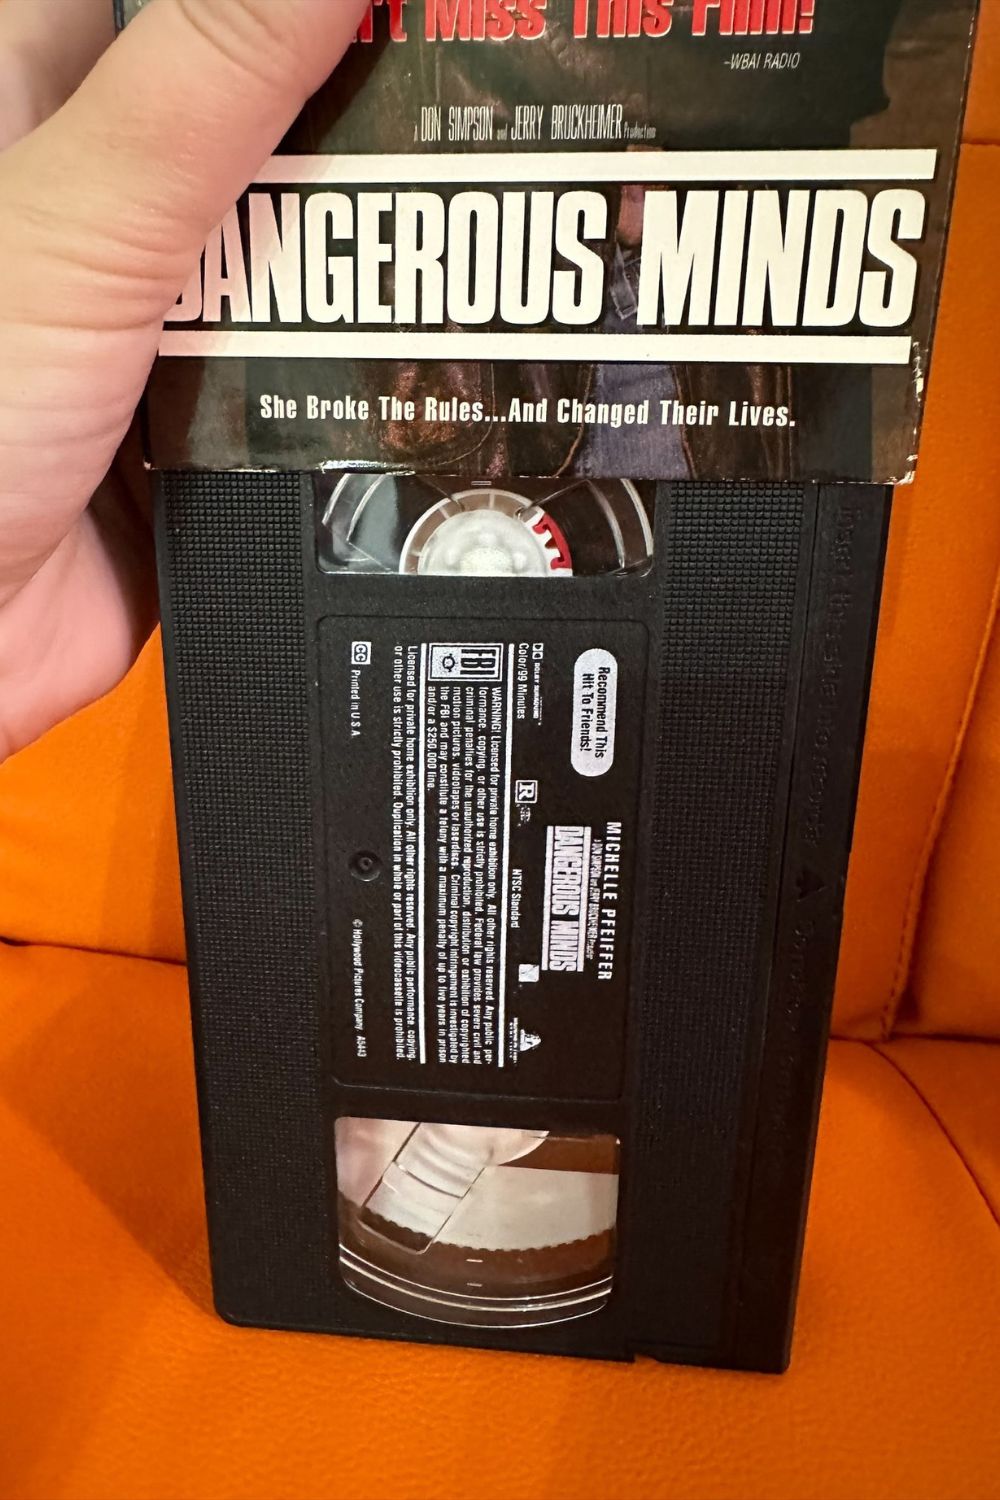 DANGEROUS MINDS VHS*